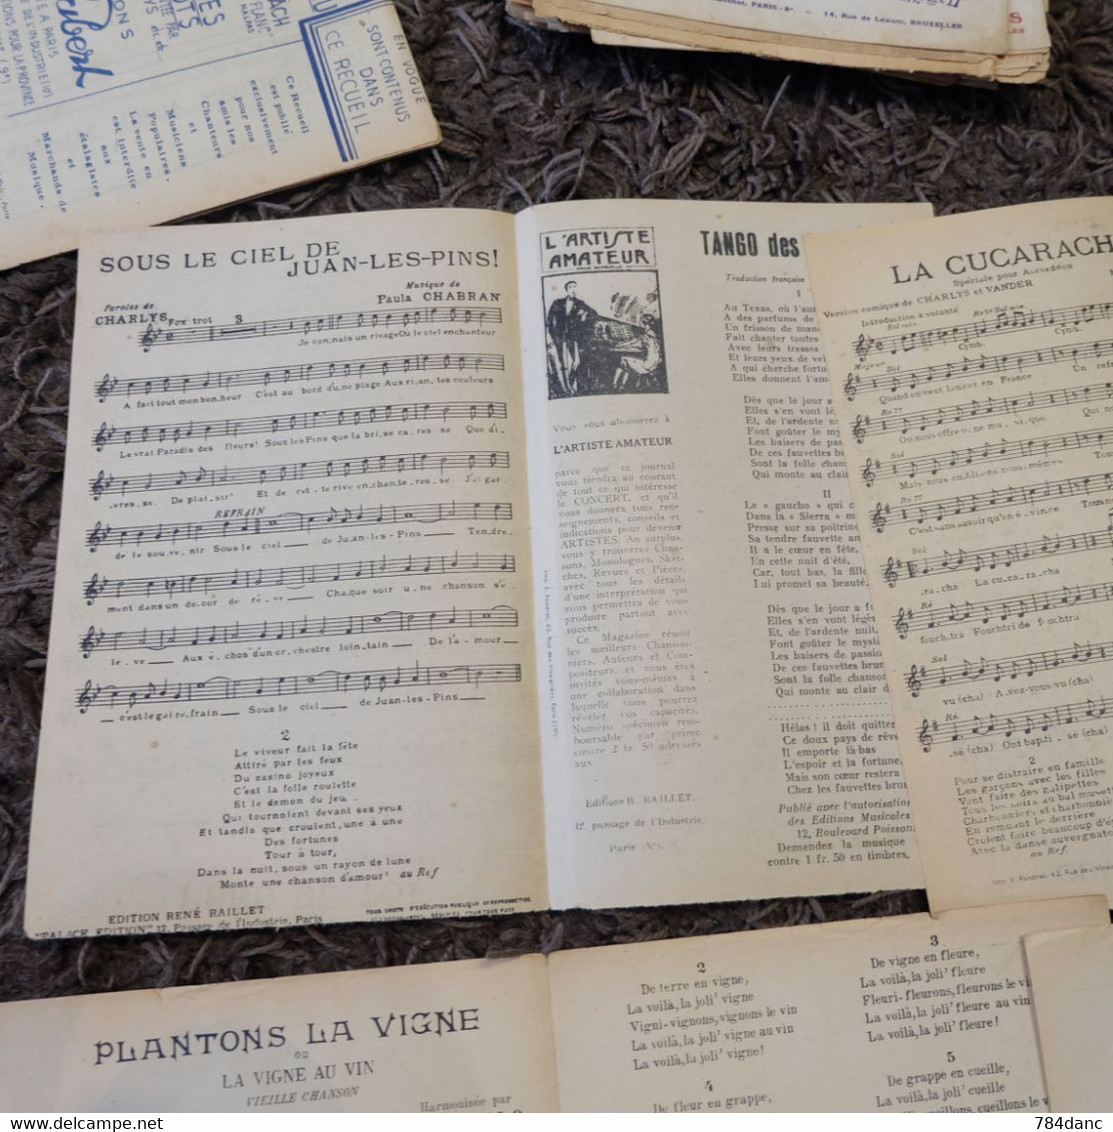 Lot 4 Partitions Musique -Pres De Toi Valse Tango De Lola Plantons La Vigne  Guy Berry - Song Books